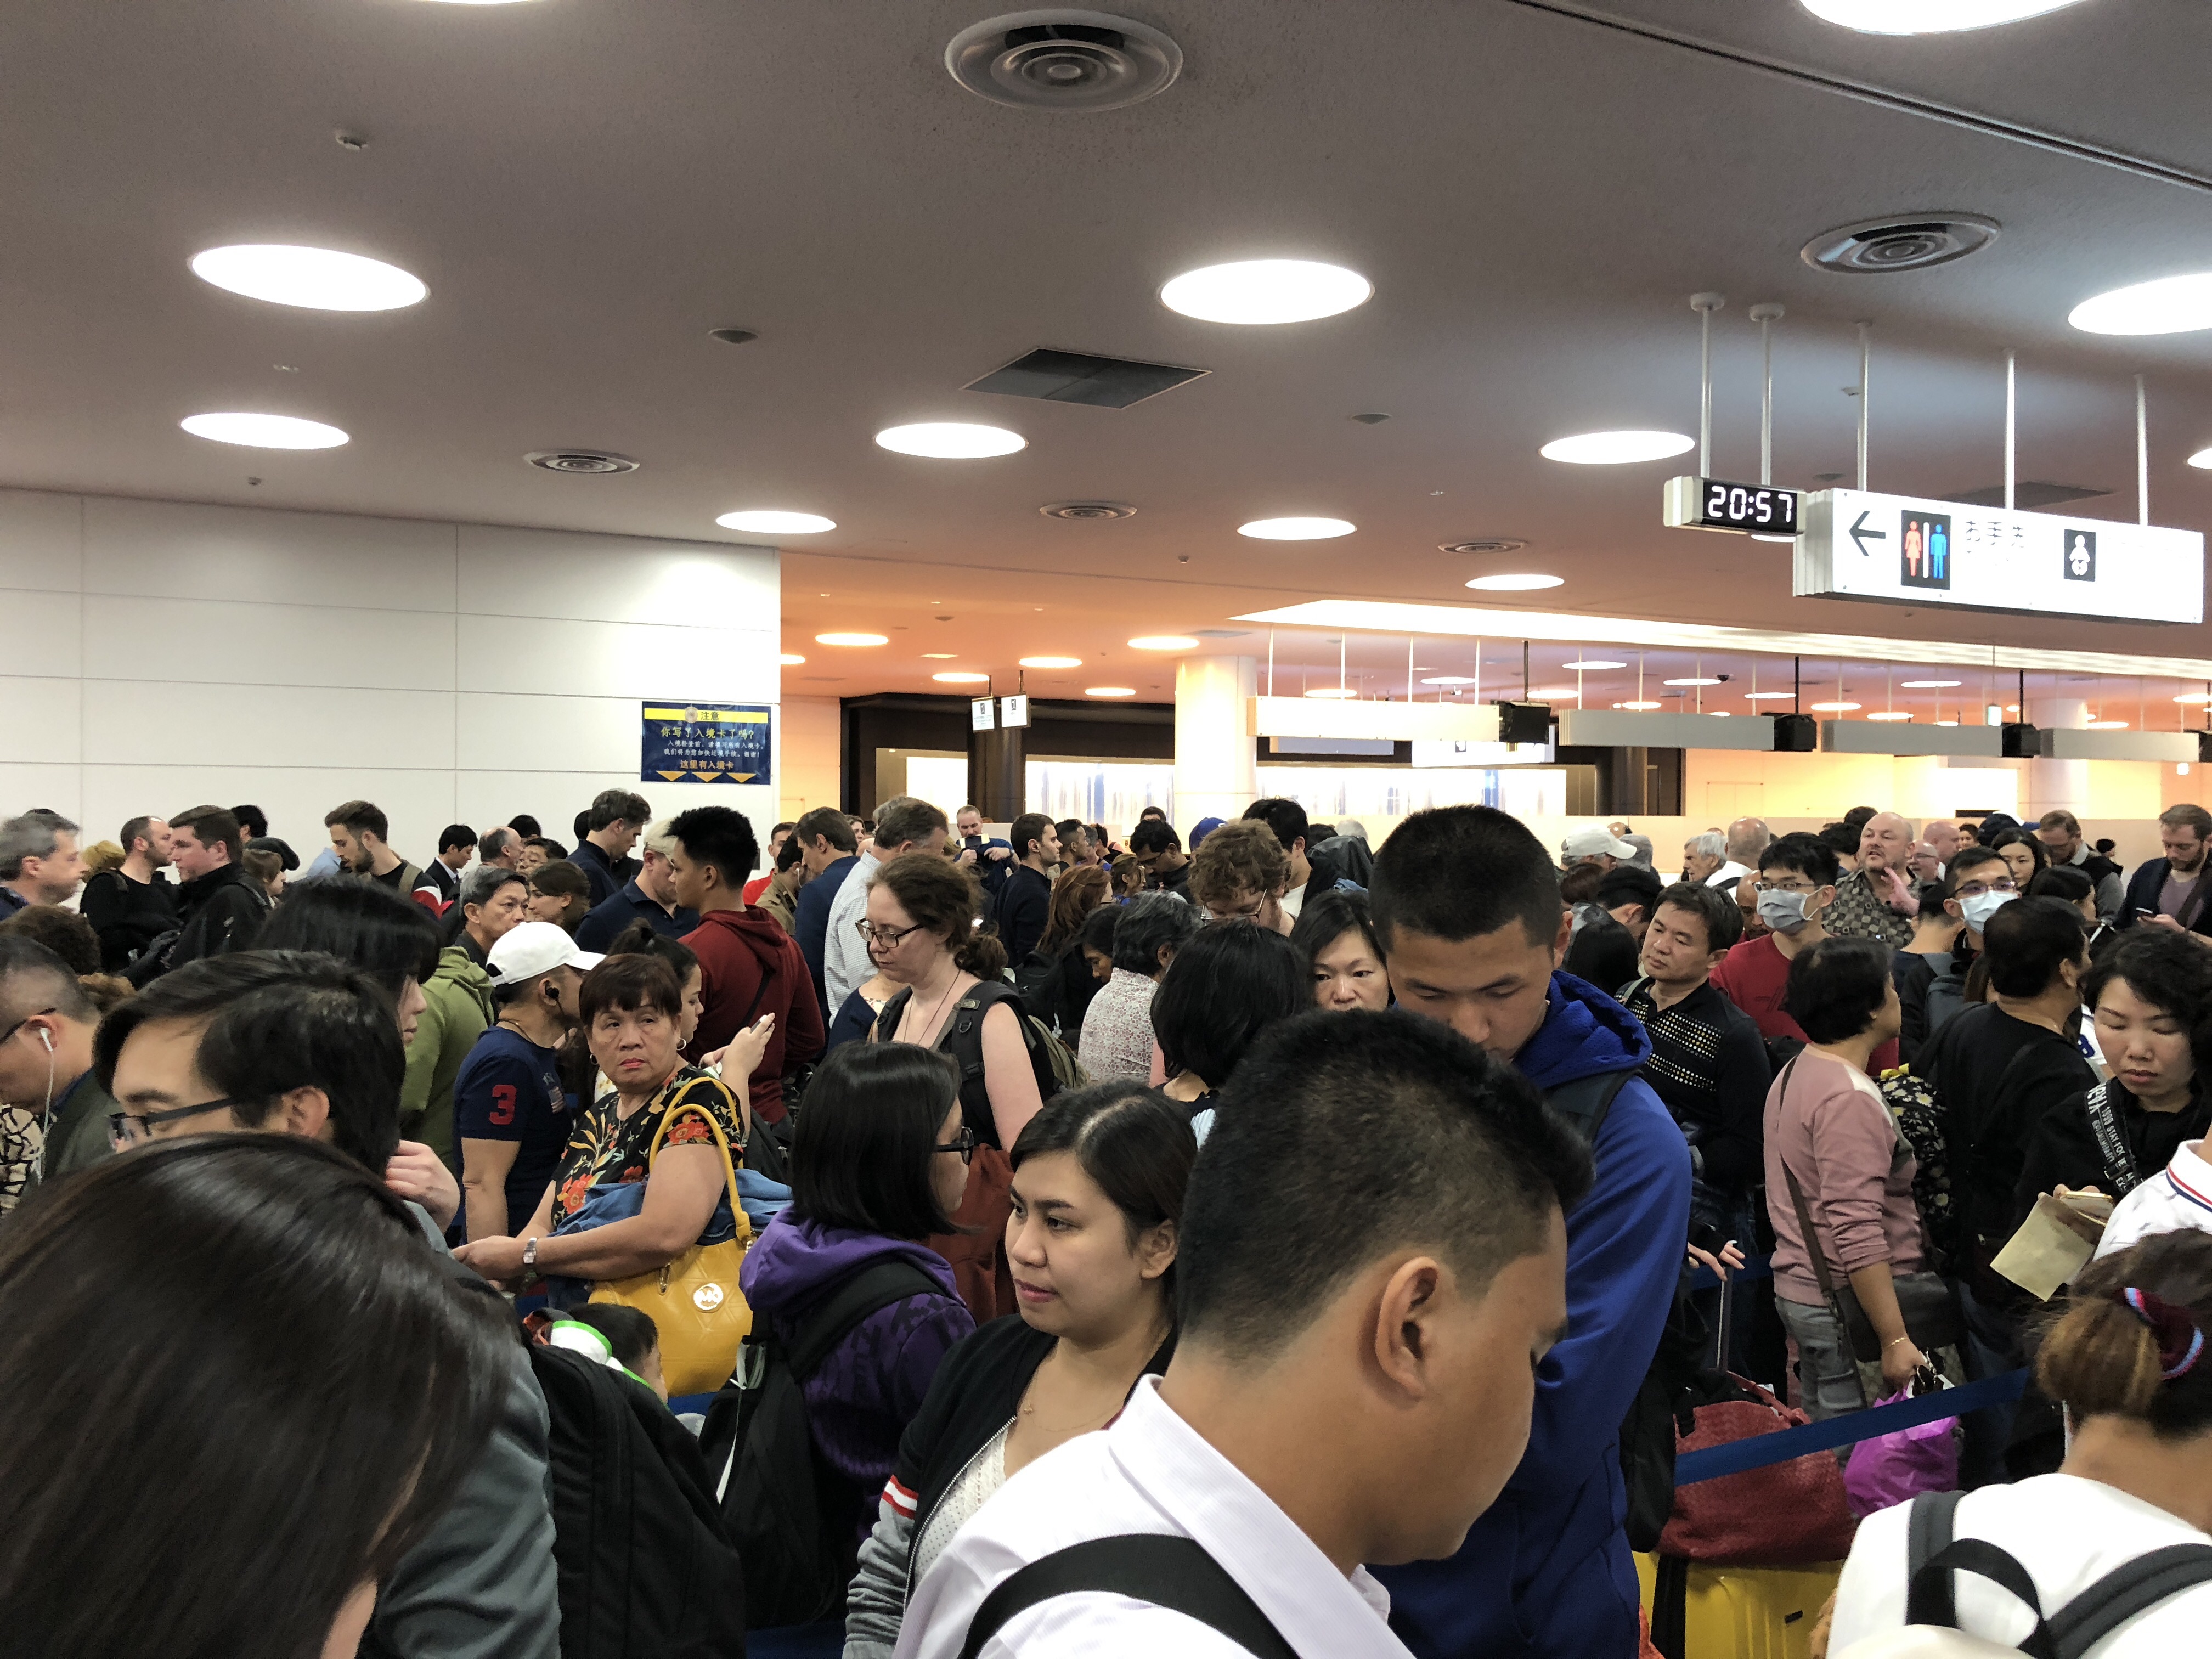 Tokyo Haneda Airport Customer Reviews - Skytrax